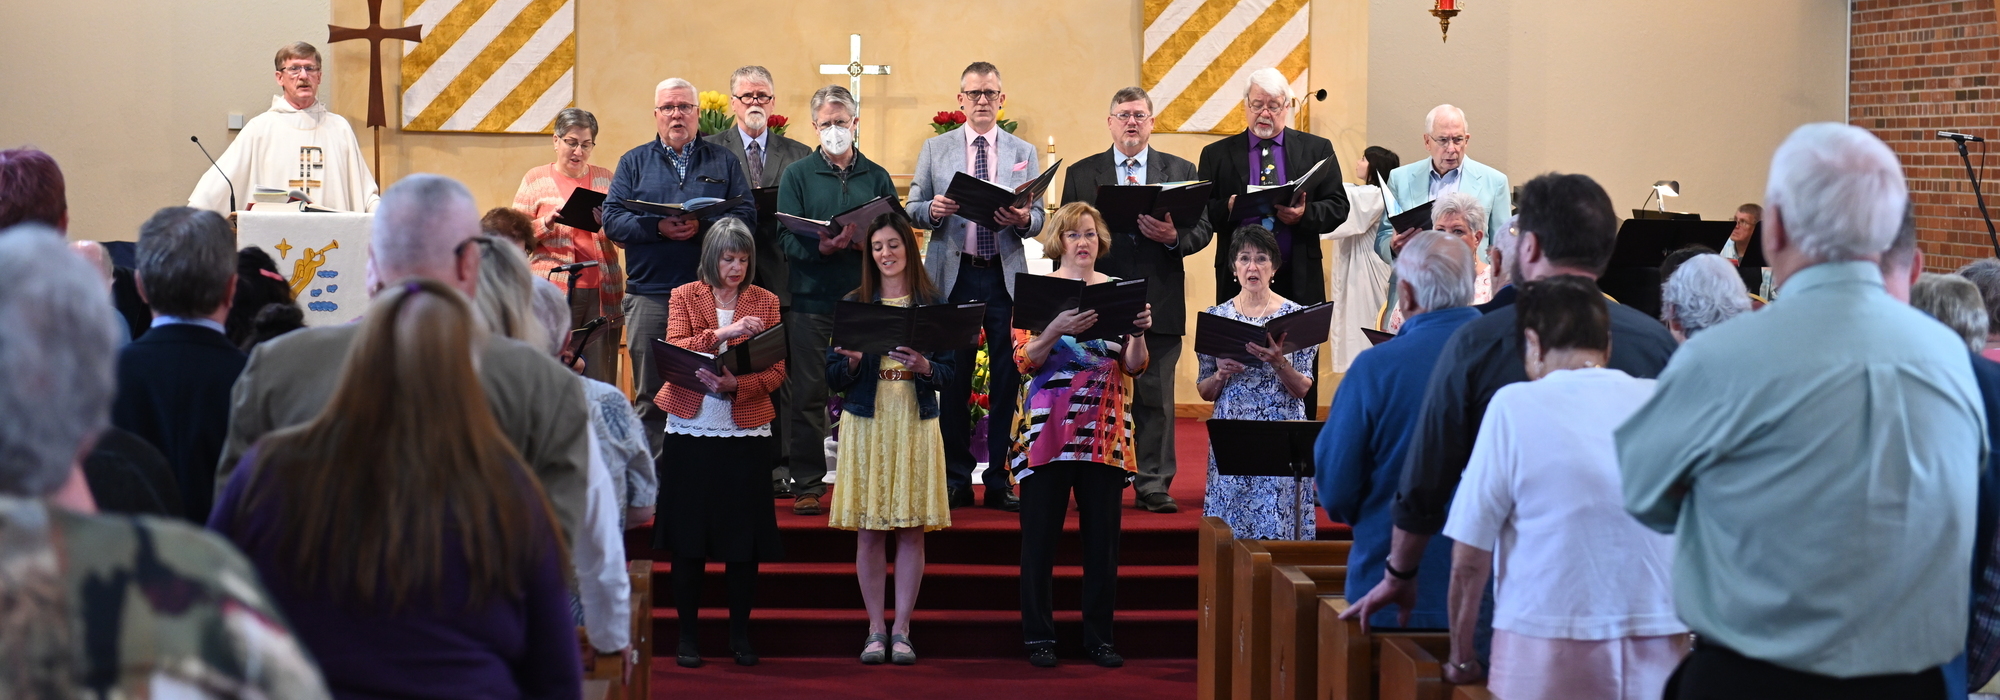 First Lutheran choir